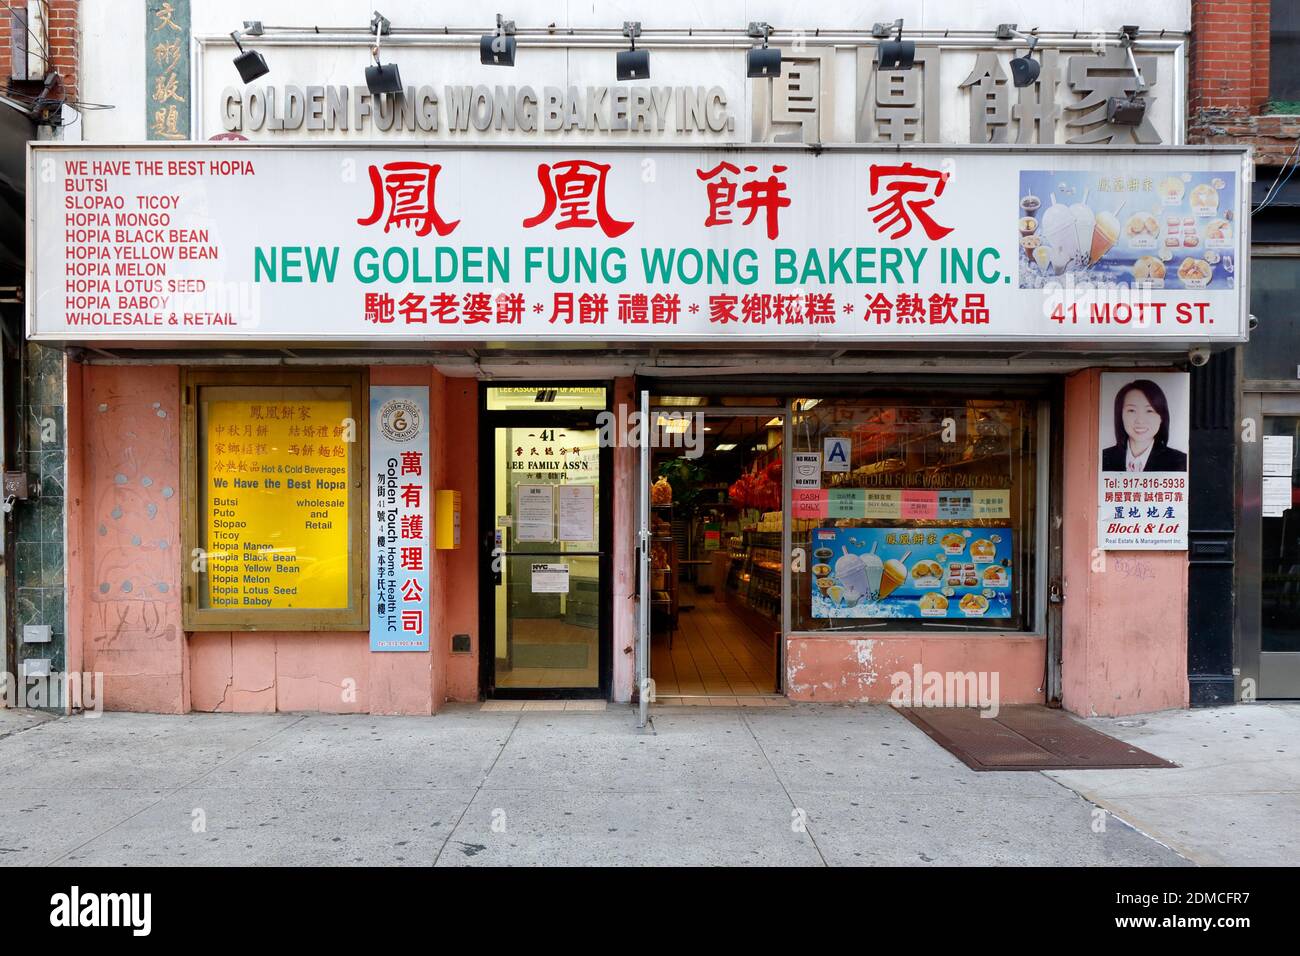 Golden Fung Wong Bakery 鳳凰餅家, 41 Mott St, Nueva York, Nueva York, Nueva York, Nueva York, foto del escaparate de una panadería china en el barrio chino de Manhattan. Foto de stock